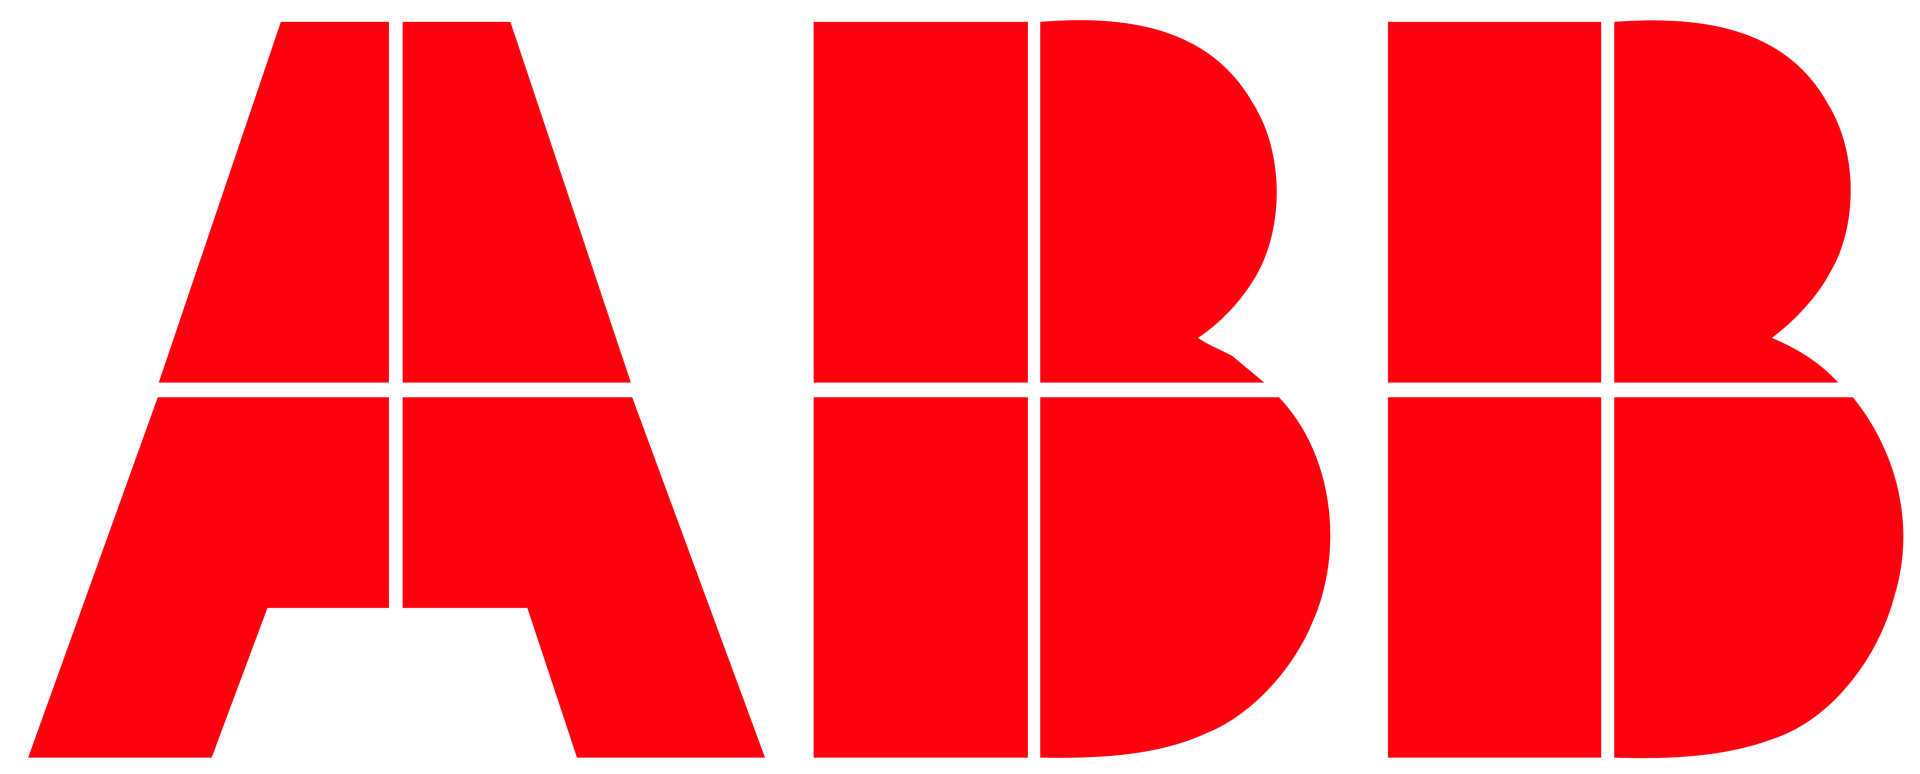 logo-ABB